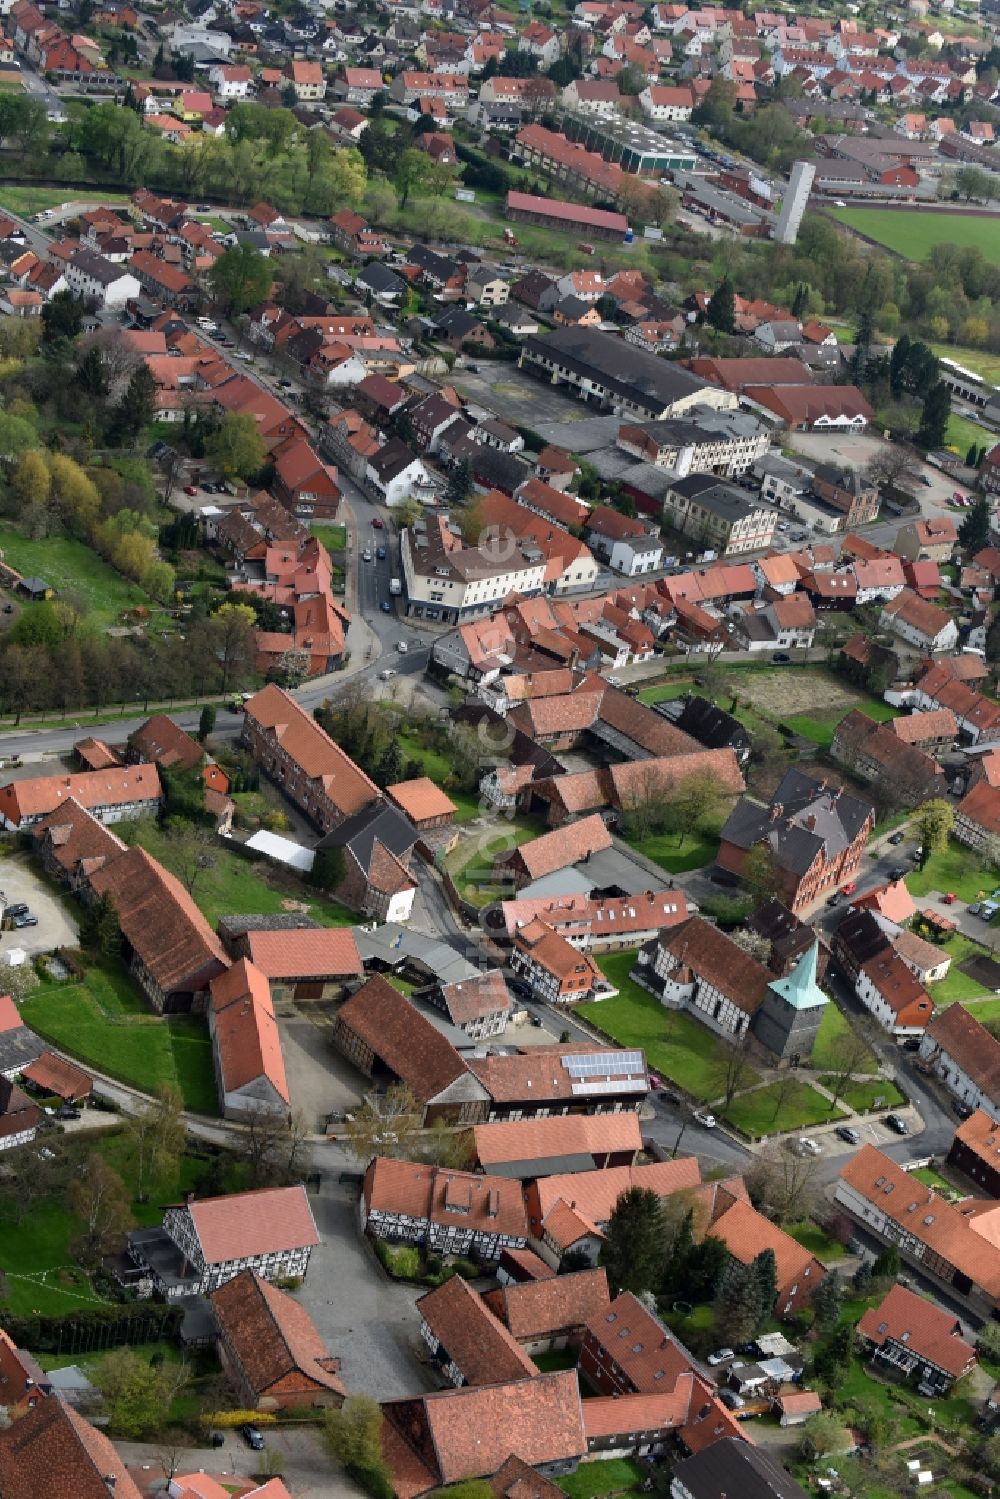 Luftbild Schladen - Ortsansicht in Schladen im Bundesland Niedersachsen